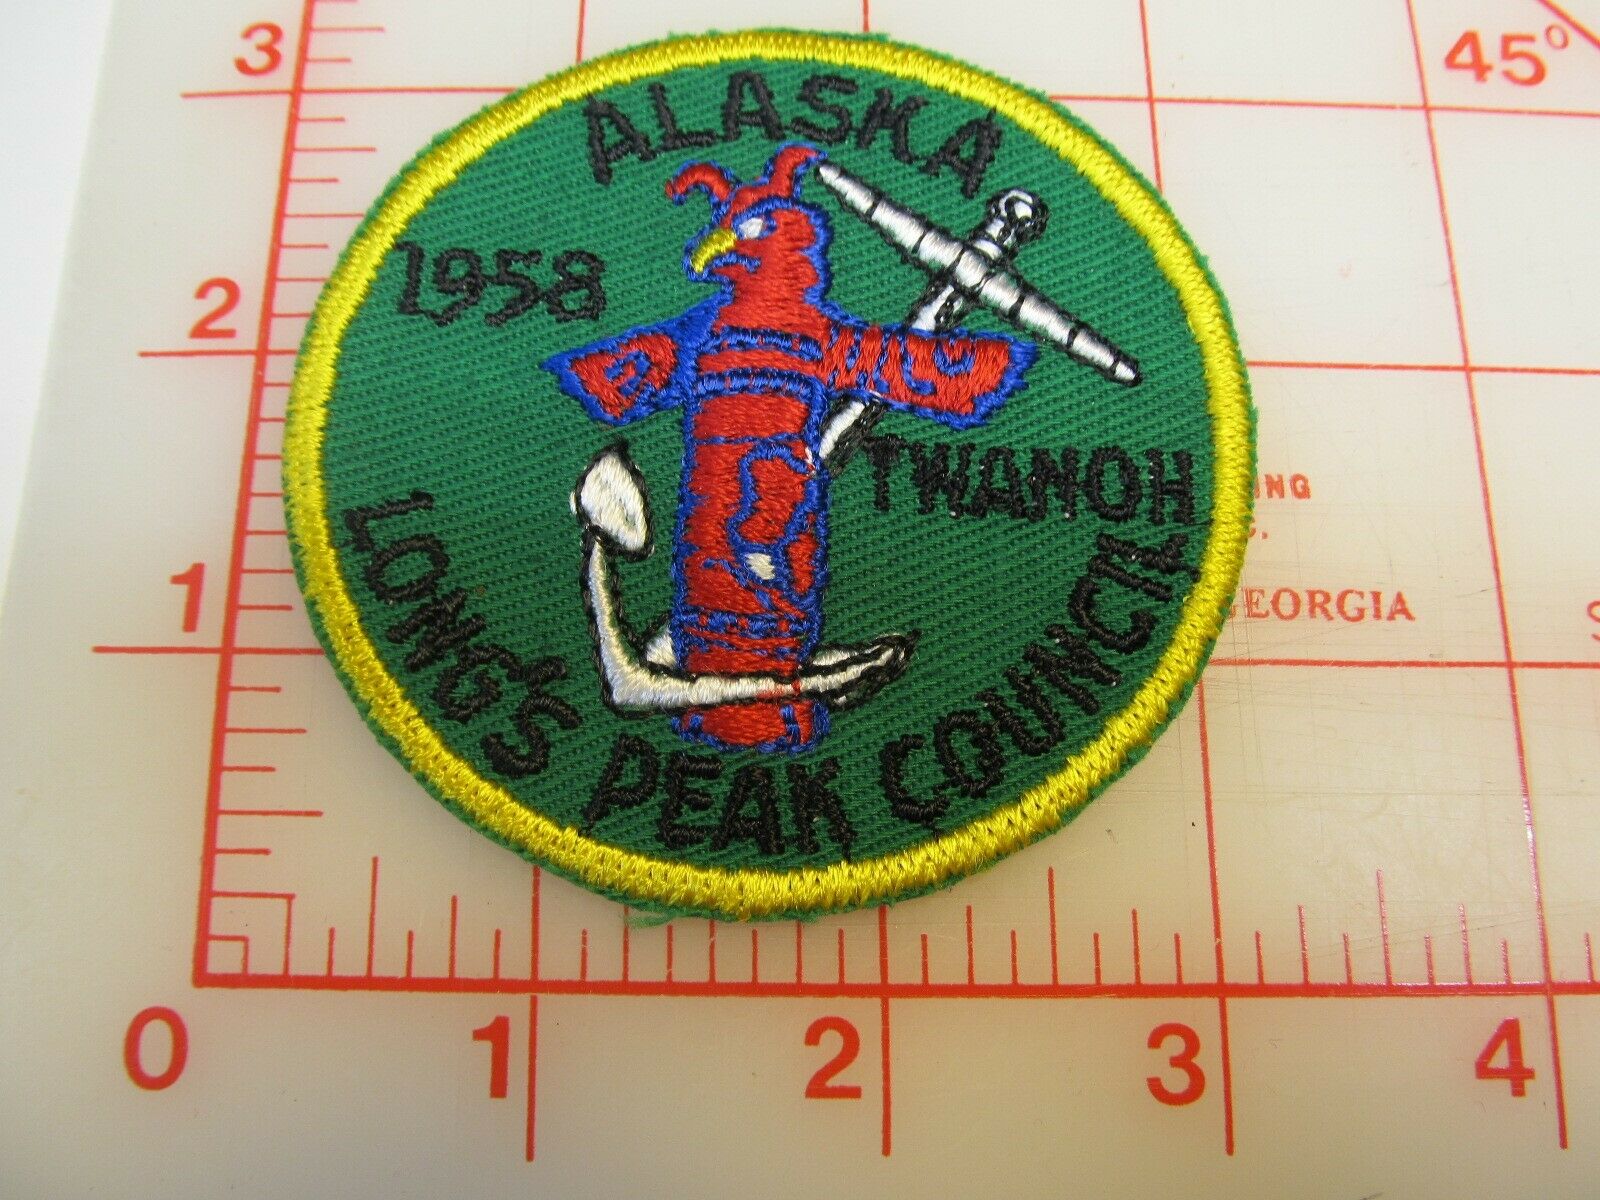 Long's Peak Council 1958 Alaska Collectible Twanoh Patch (r45)